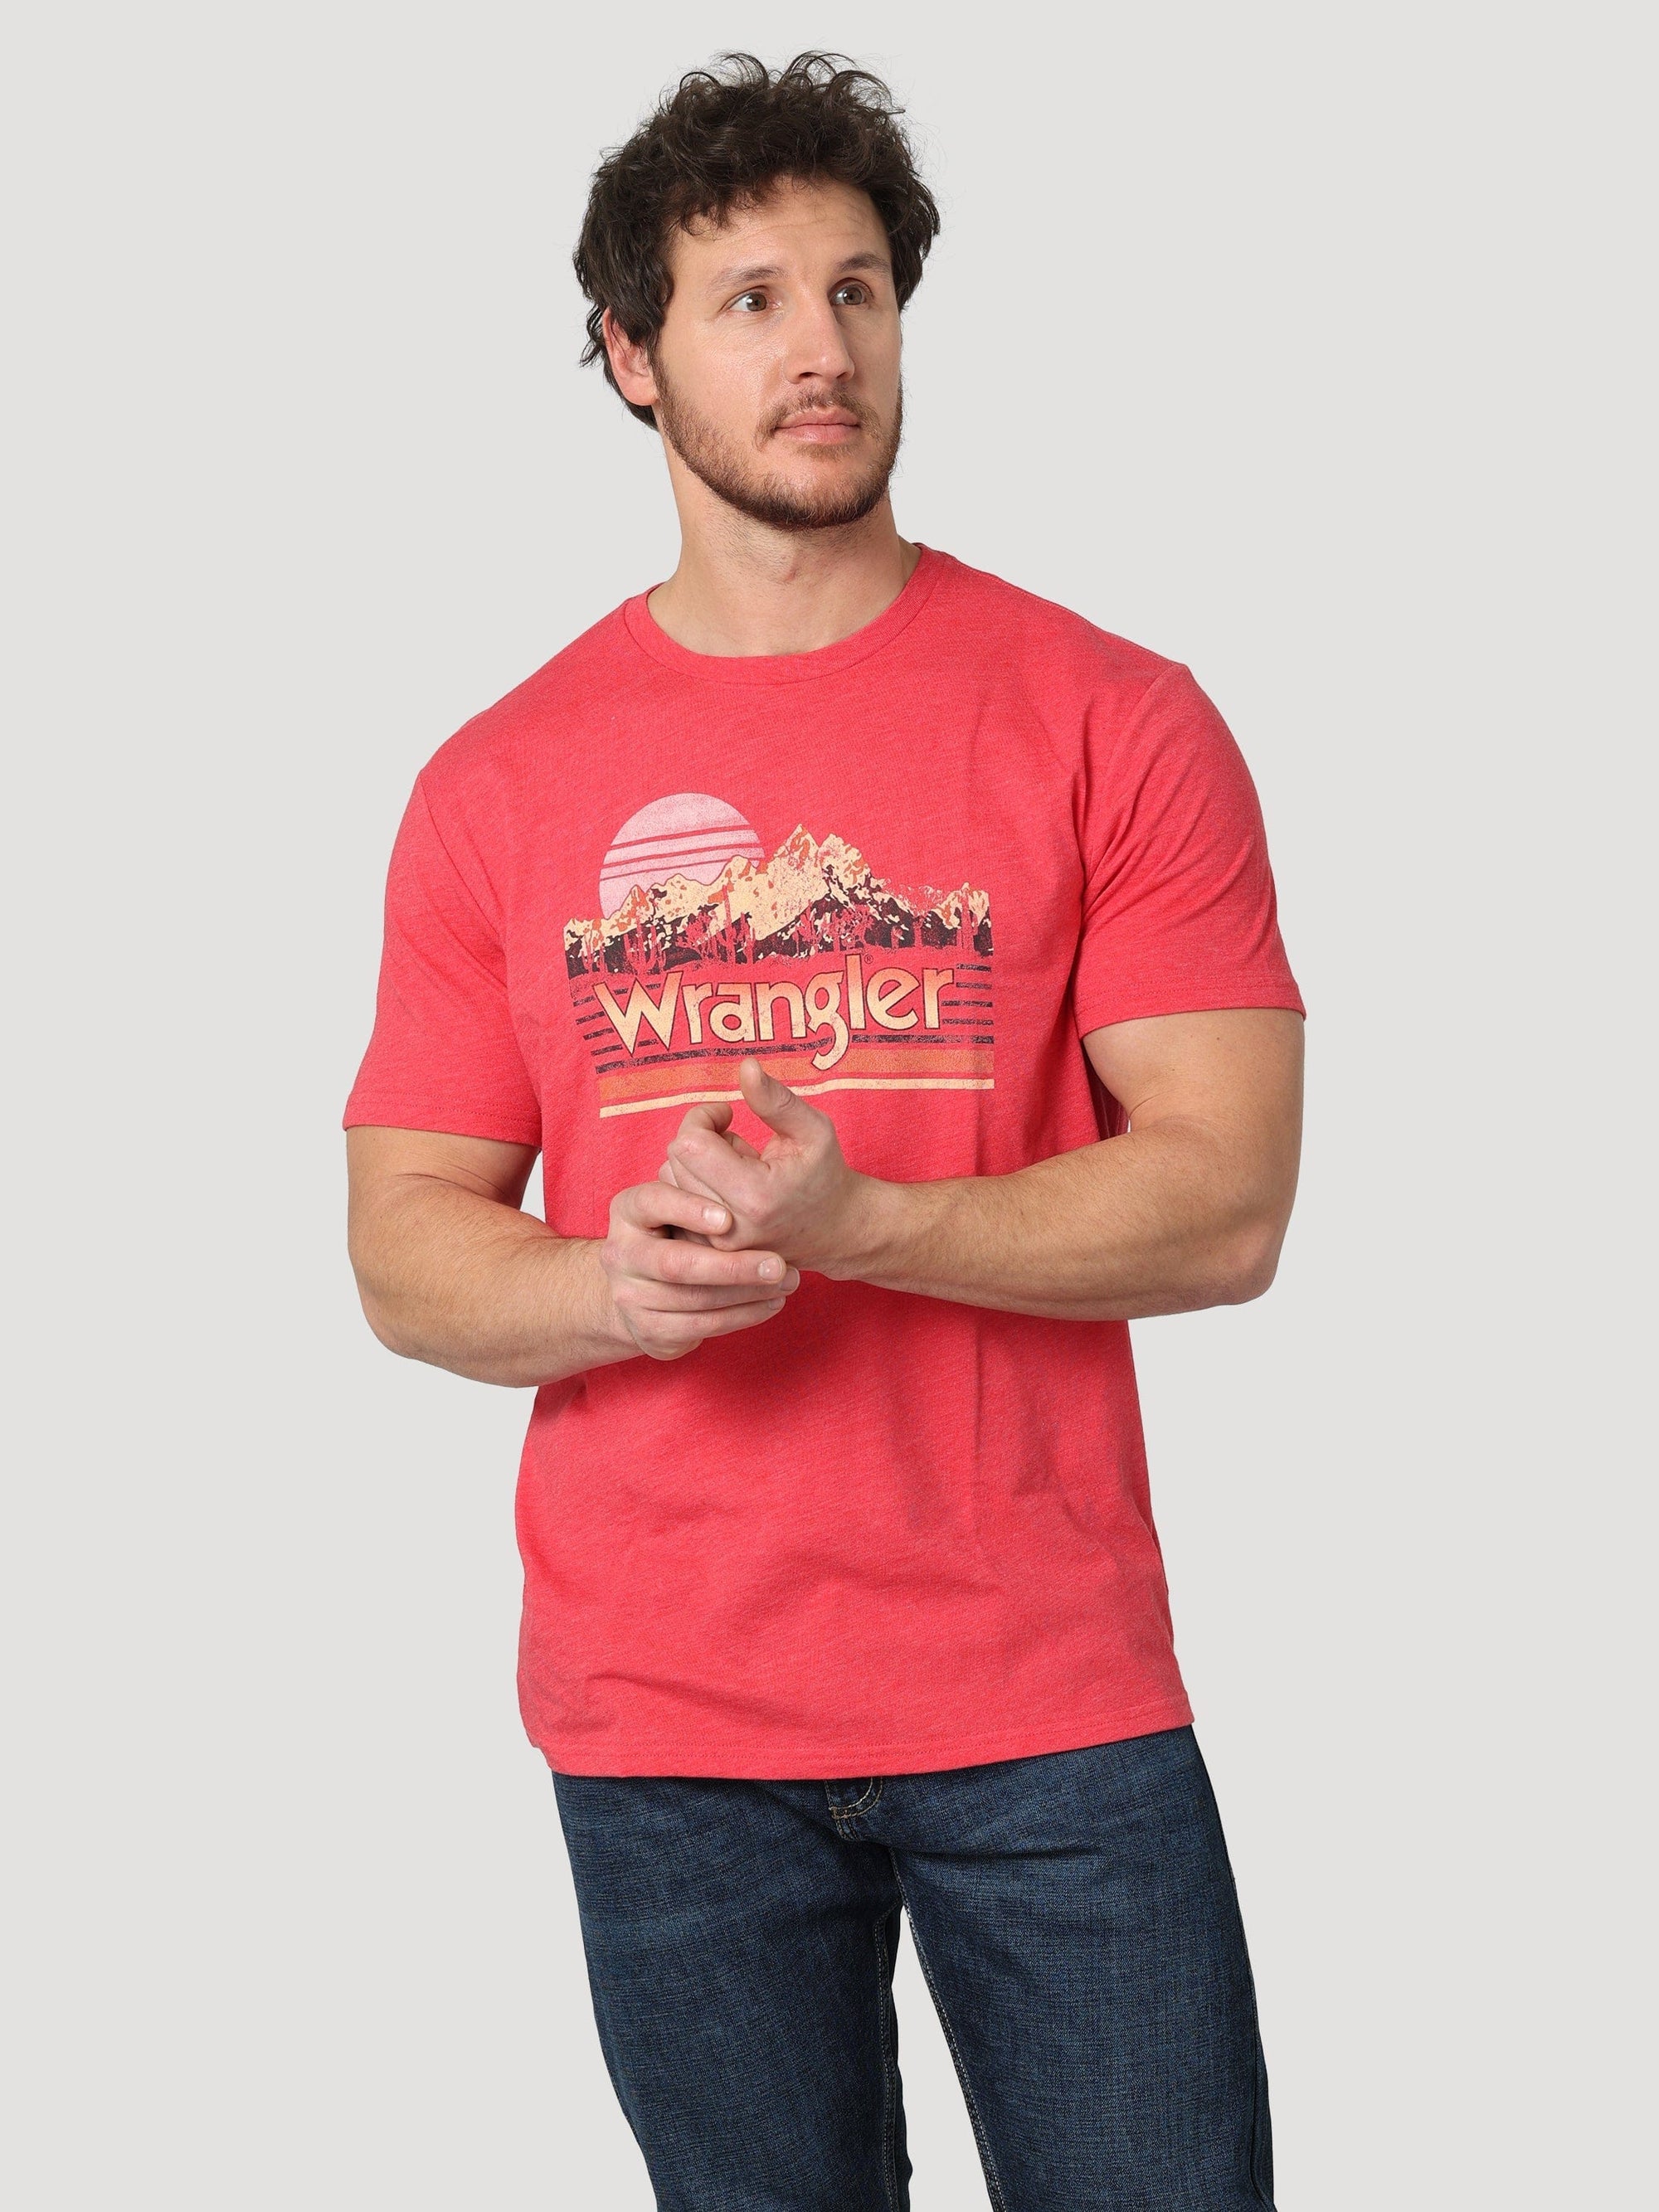 WRANGLER JEANS Shirts Wrangler Men's Mountain Moonrise Red Graphic T-Shirt 112315023